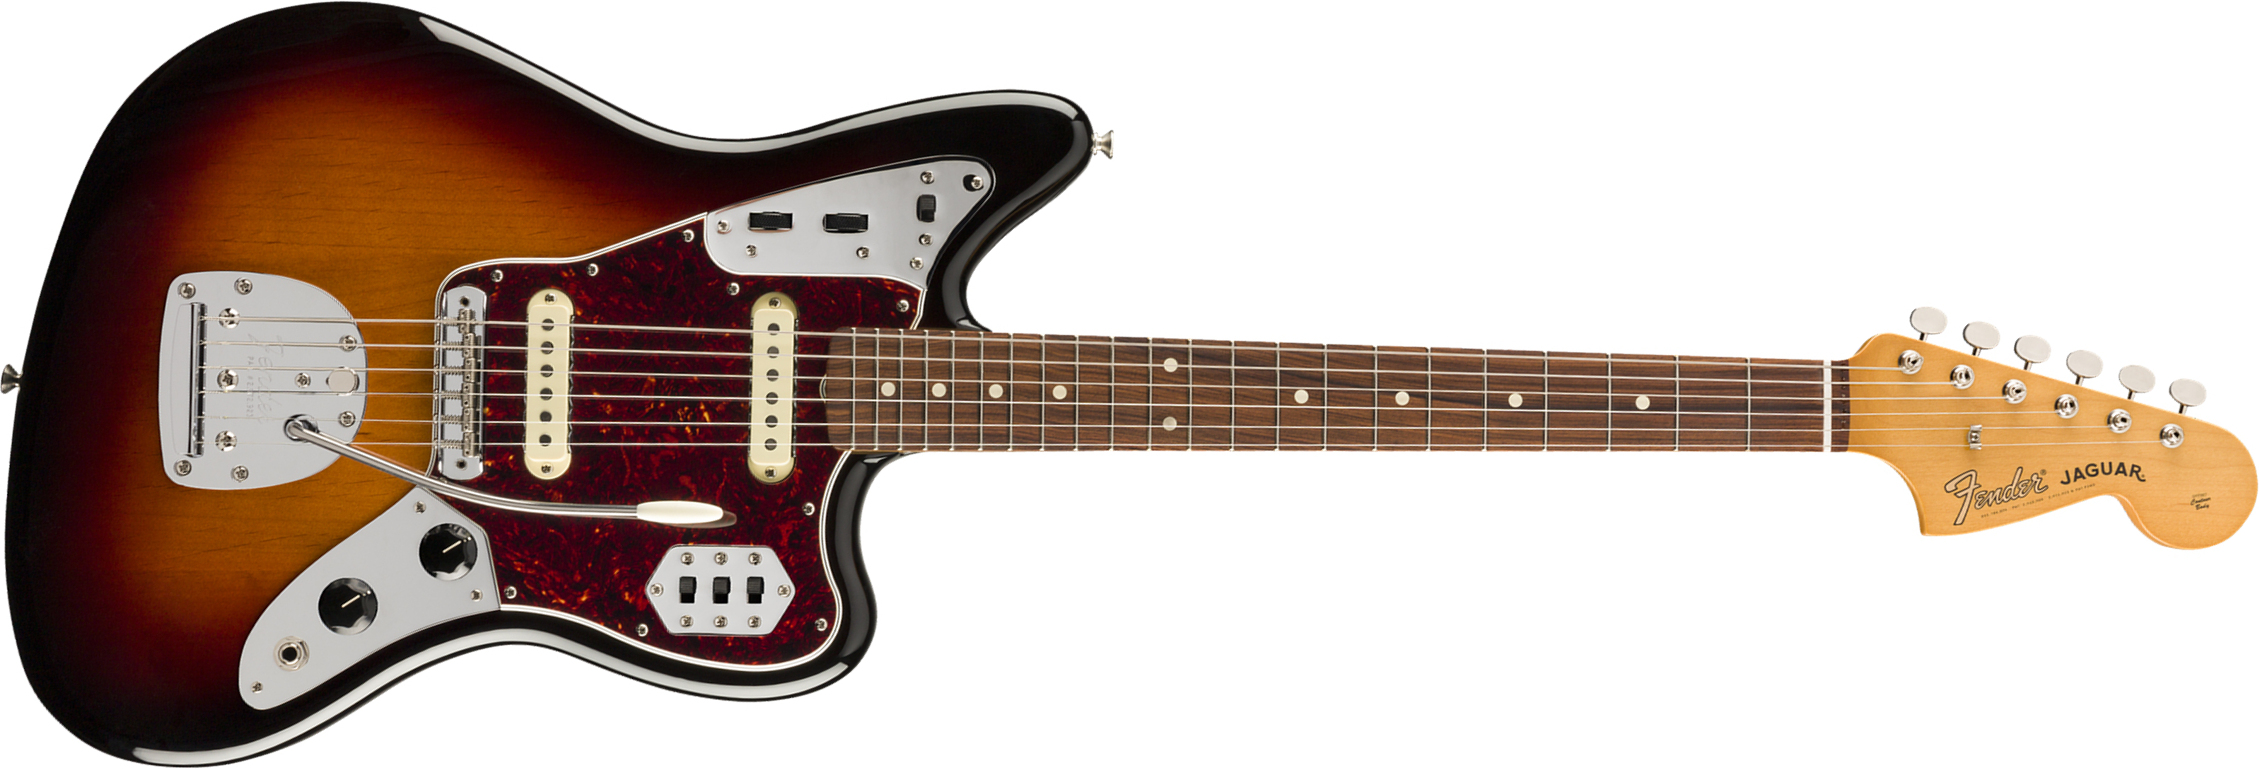 Fender Jaguar 60s Vintera Vintage Mex Pf - 3-color Sunburst - Guitarra electrica retro rock - Main picture